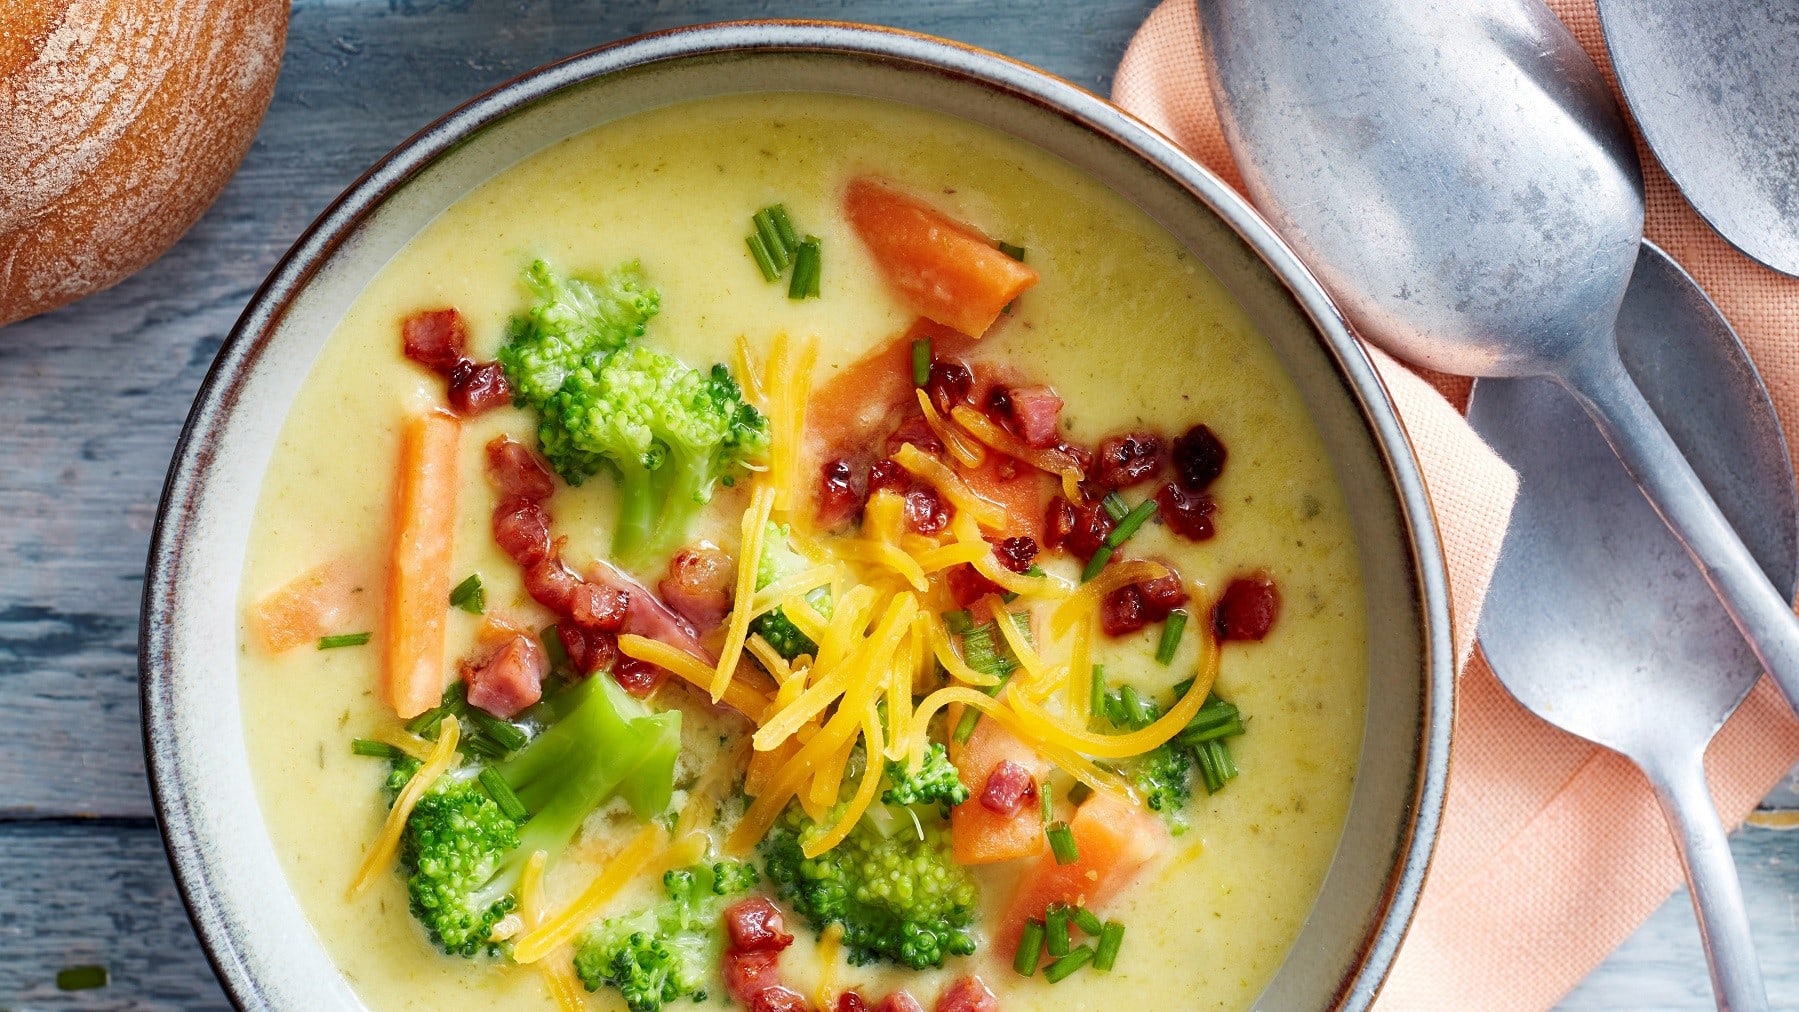 Cremige Cheddar-Brokkoli-Suppe, garniert mit Speck, frischem Brokkoli und Schnittlauch, serviert in einer Tonschale auf einem grauen Holztisch.